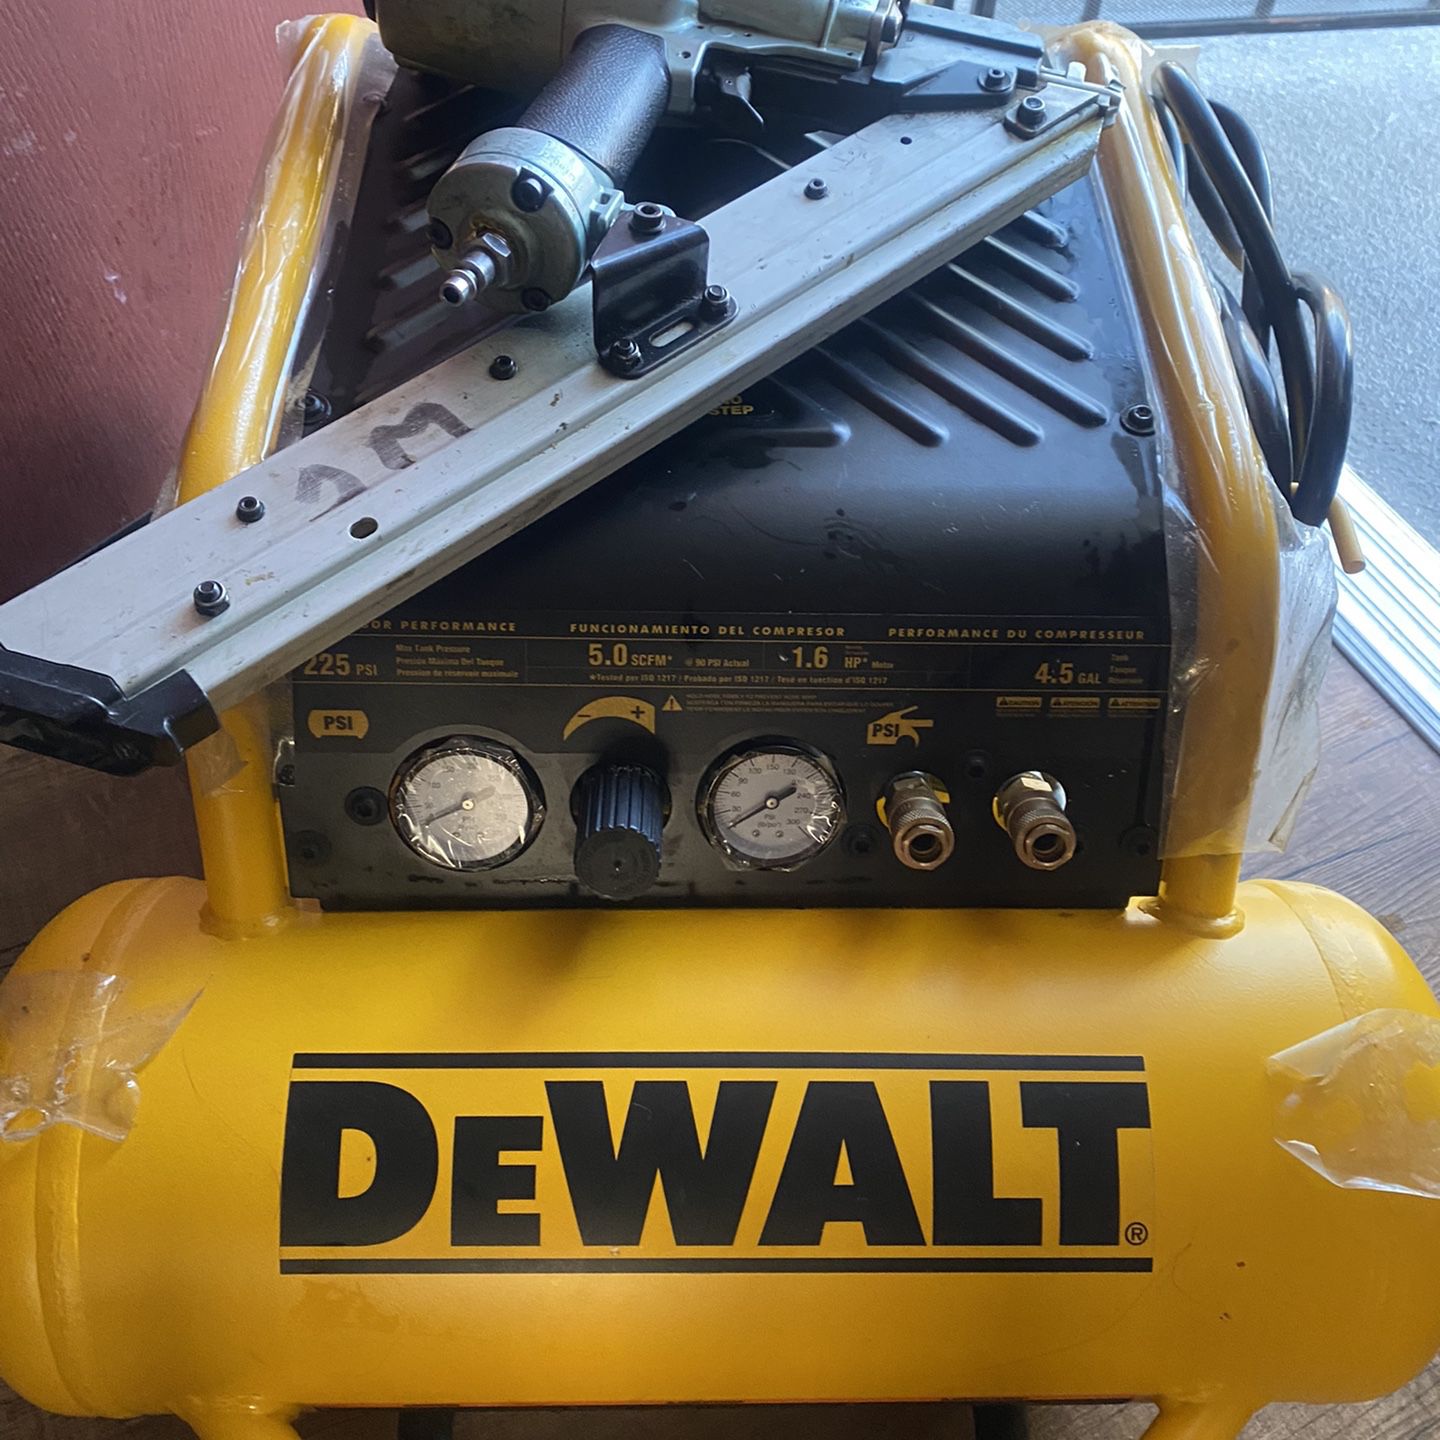 Hardware Gun And Dewalt Air Compressor